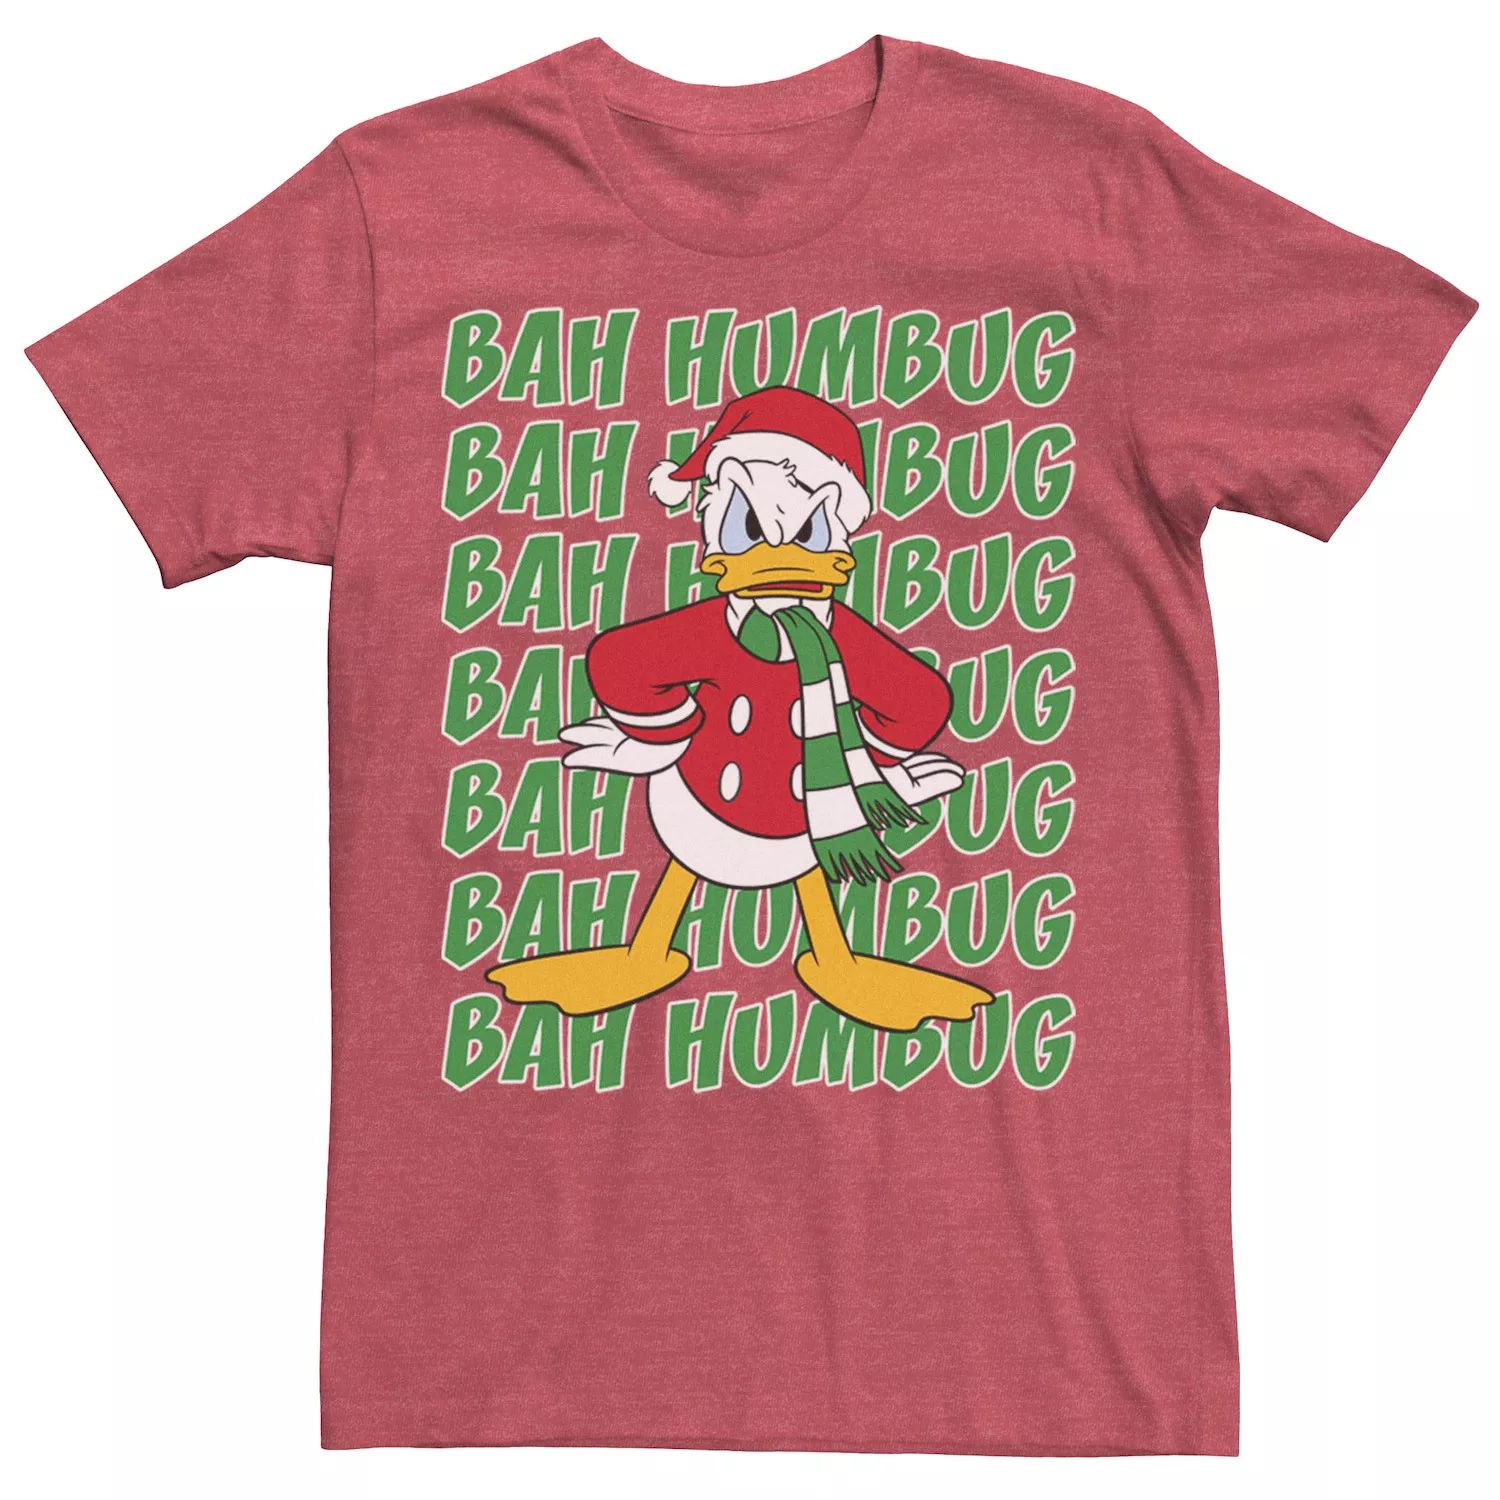 Мужская футболка Donald Duck Bah Humbug с рождественским текстом Disney ripndip bah humbug pocket